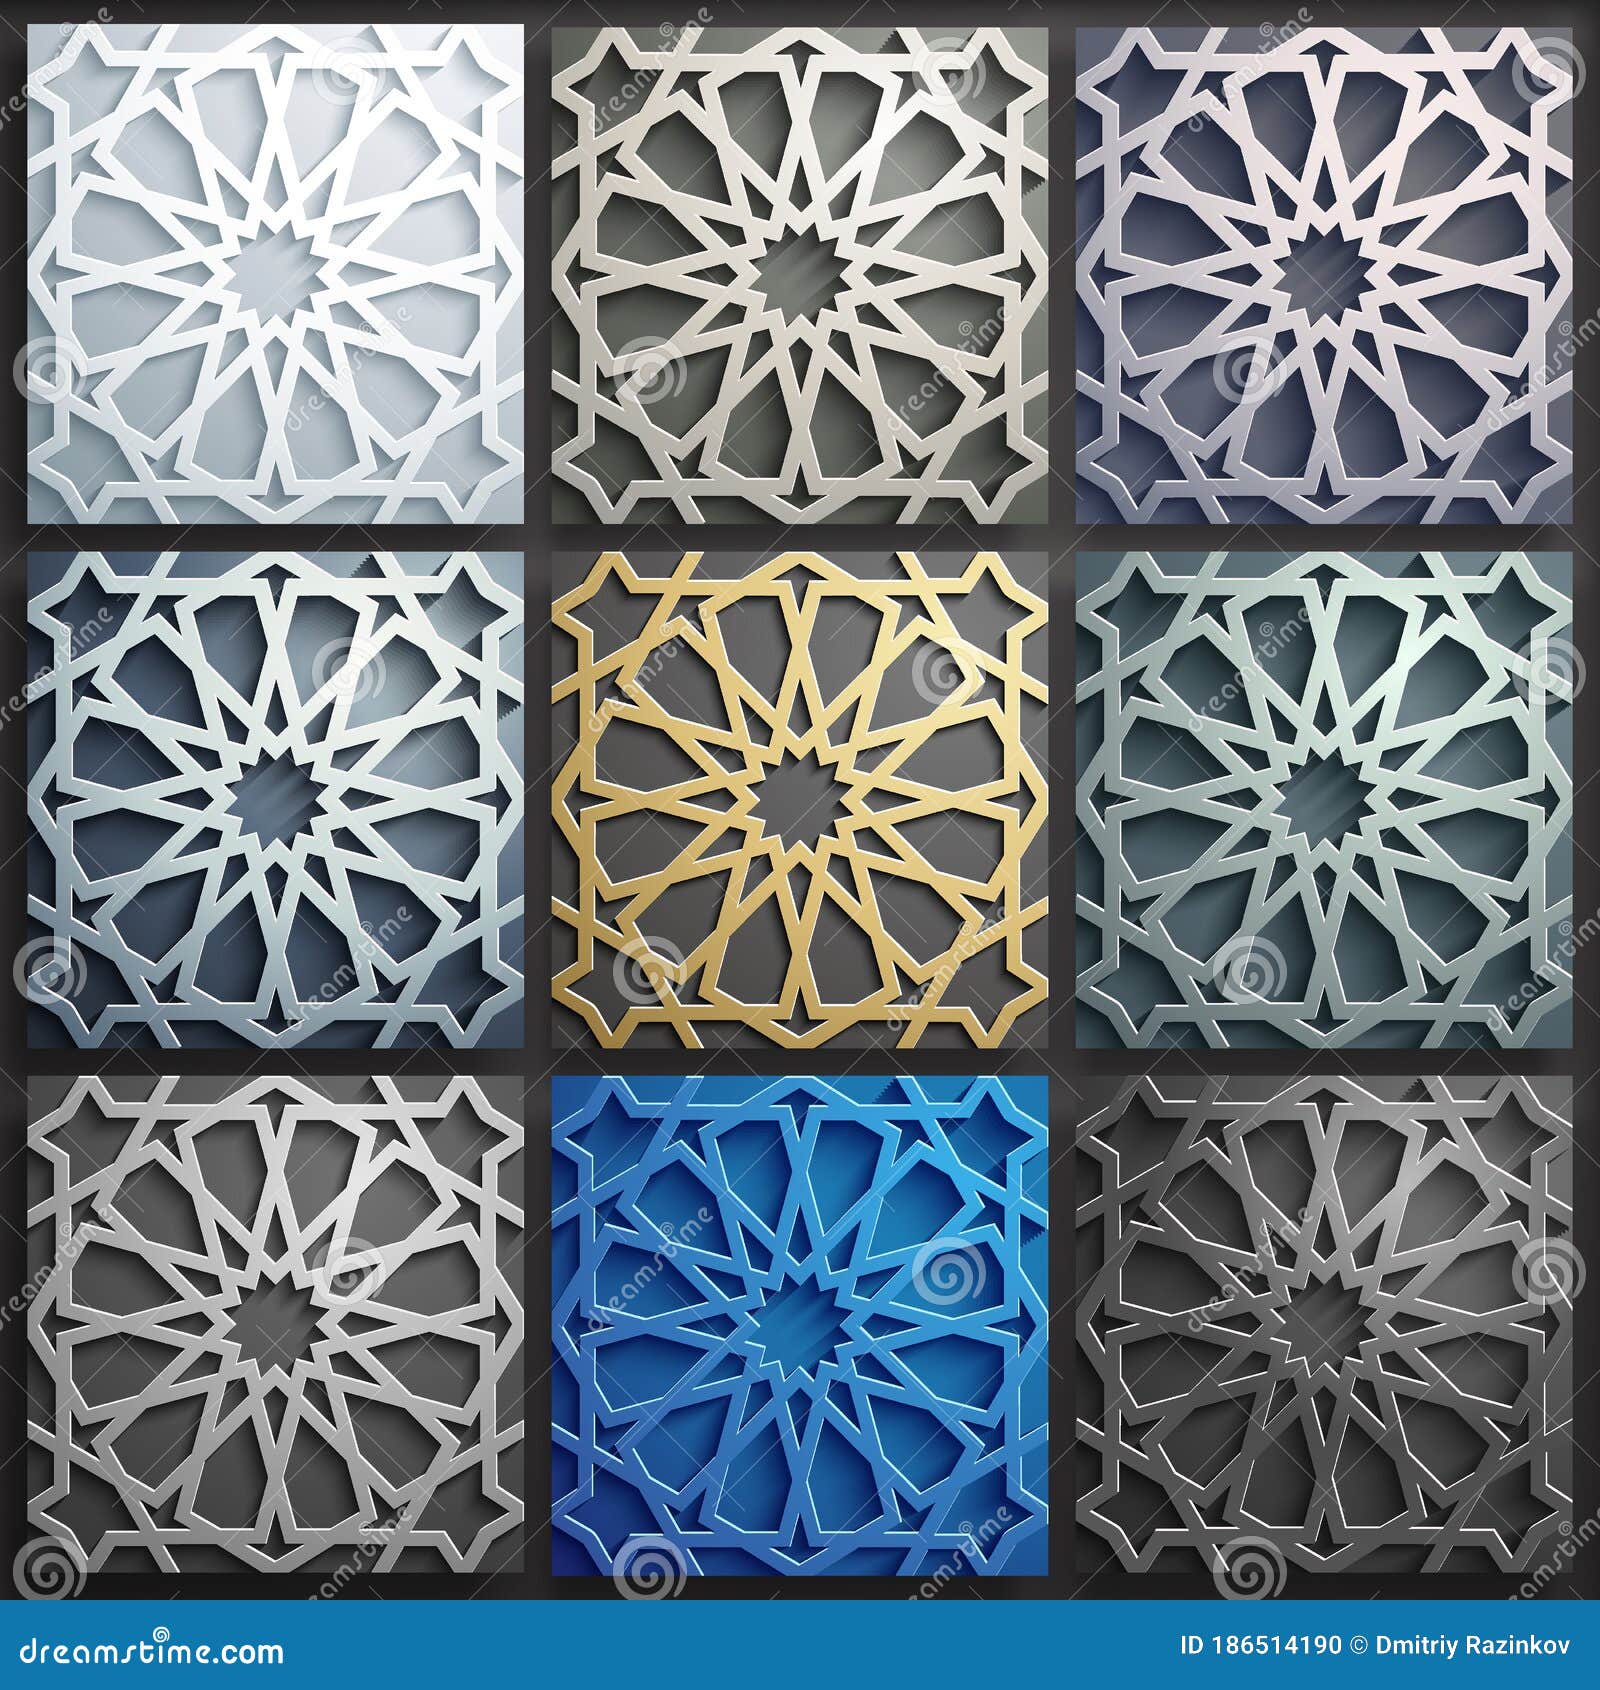 Bộ mẫu Họa tiết Hồi giáo 3D Vector. Trang trí 3D tiểu phẩm Ả Rập trừu tượng sẽ khiến bạn thích thú và rất ngạc nhiên khi thấy được những trang trí 3D hoành tráng và tinh xảo đến từng chi tiết nhỏ nhất. Hãy để tâm hồn bay bổng đến những nơi tuyệt đẹp này và tận hưởng những giây phút tuyệt vời nhất!